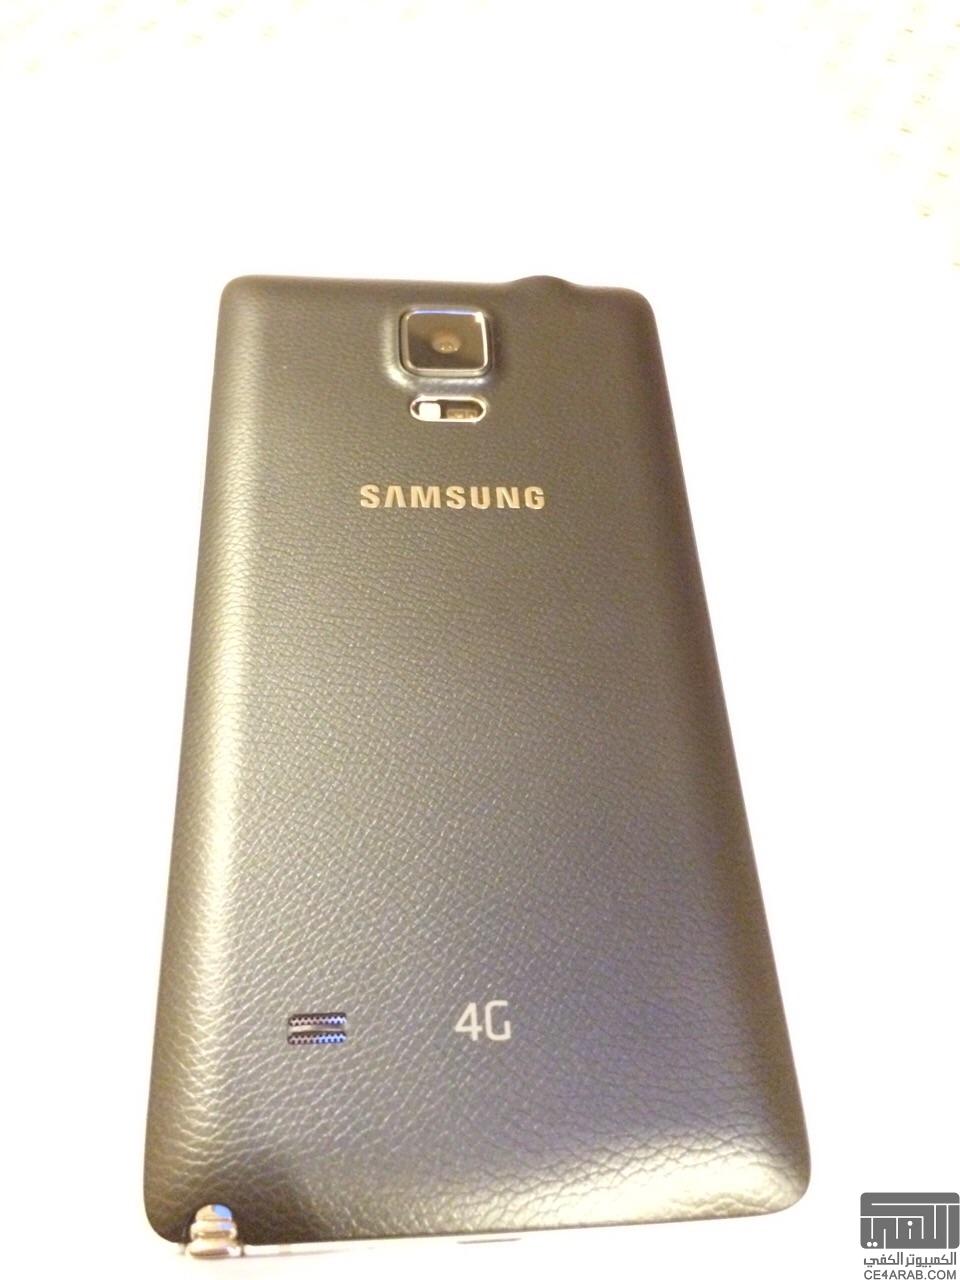 للبيع في الرياض سامسونج نوت٤ لون أسود ٣٢ قيقا Samsung Note 4 ضمان أكسيوم